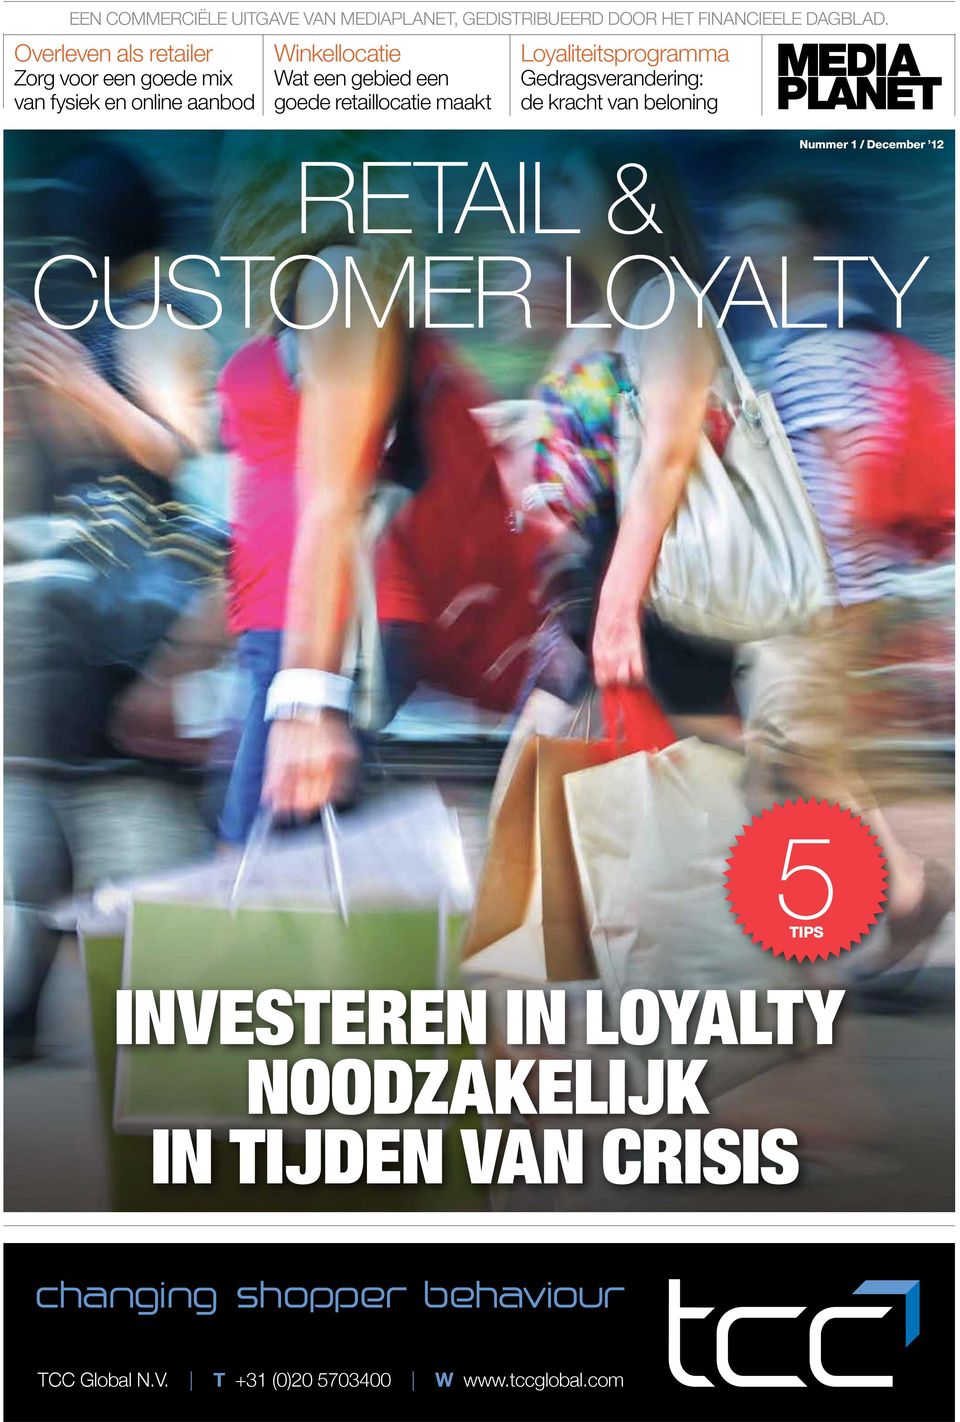 goede retaillocatie maakt Loyaliteitsprogramma Gedragsverandering: de kracht van beloning RETAIL & Nummer 1 /